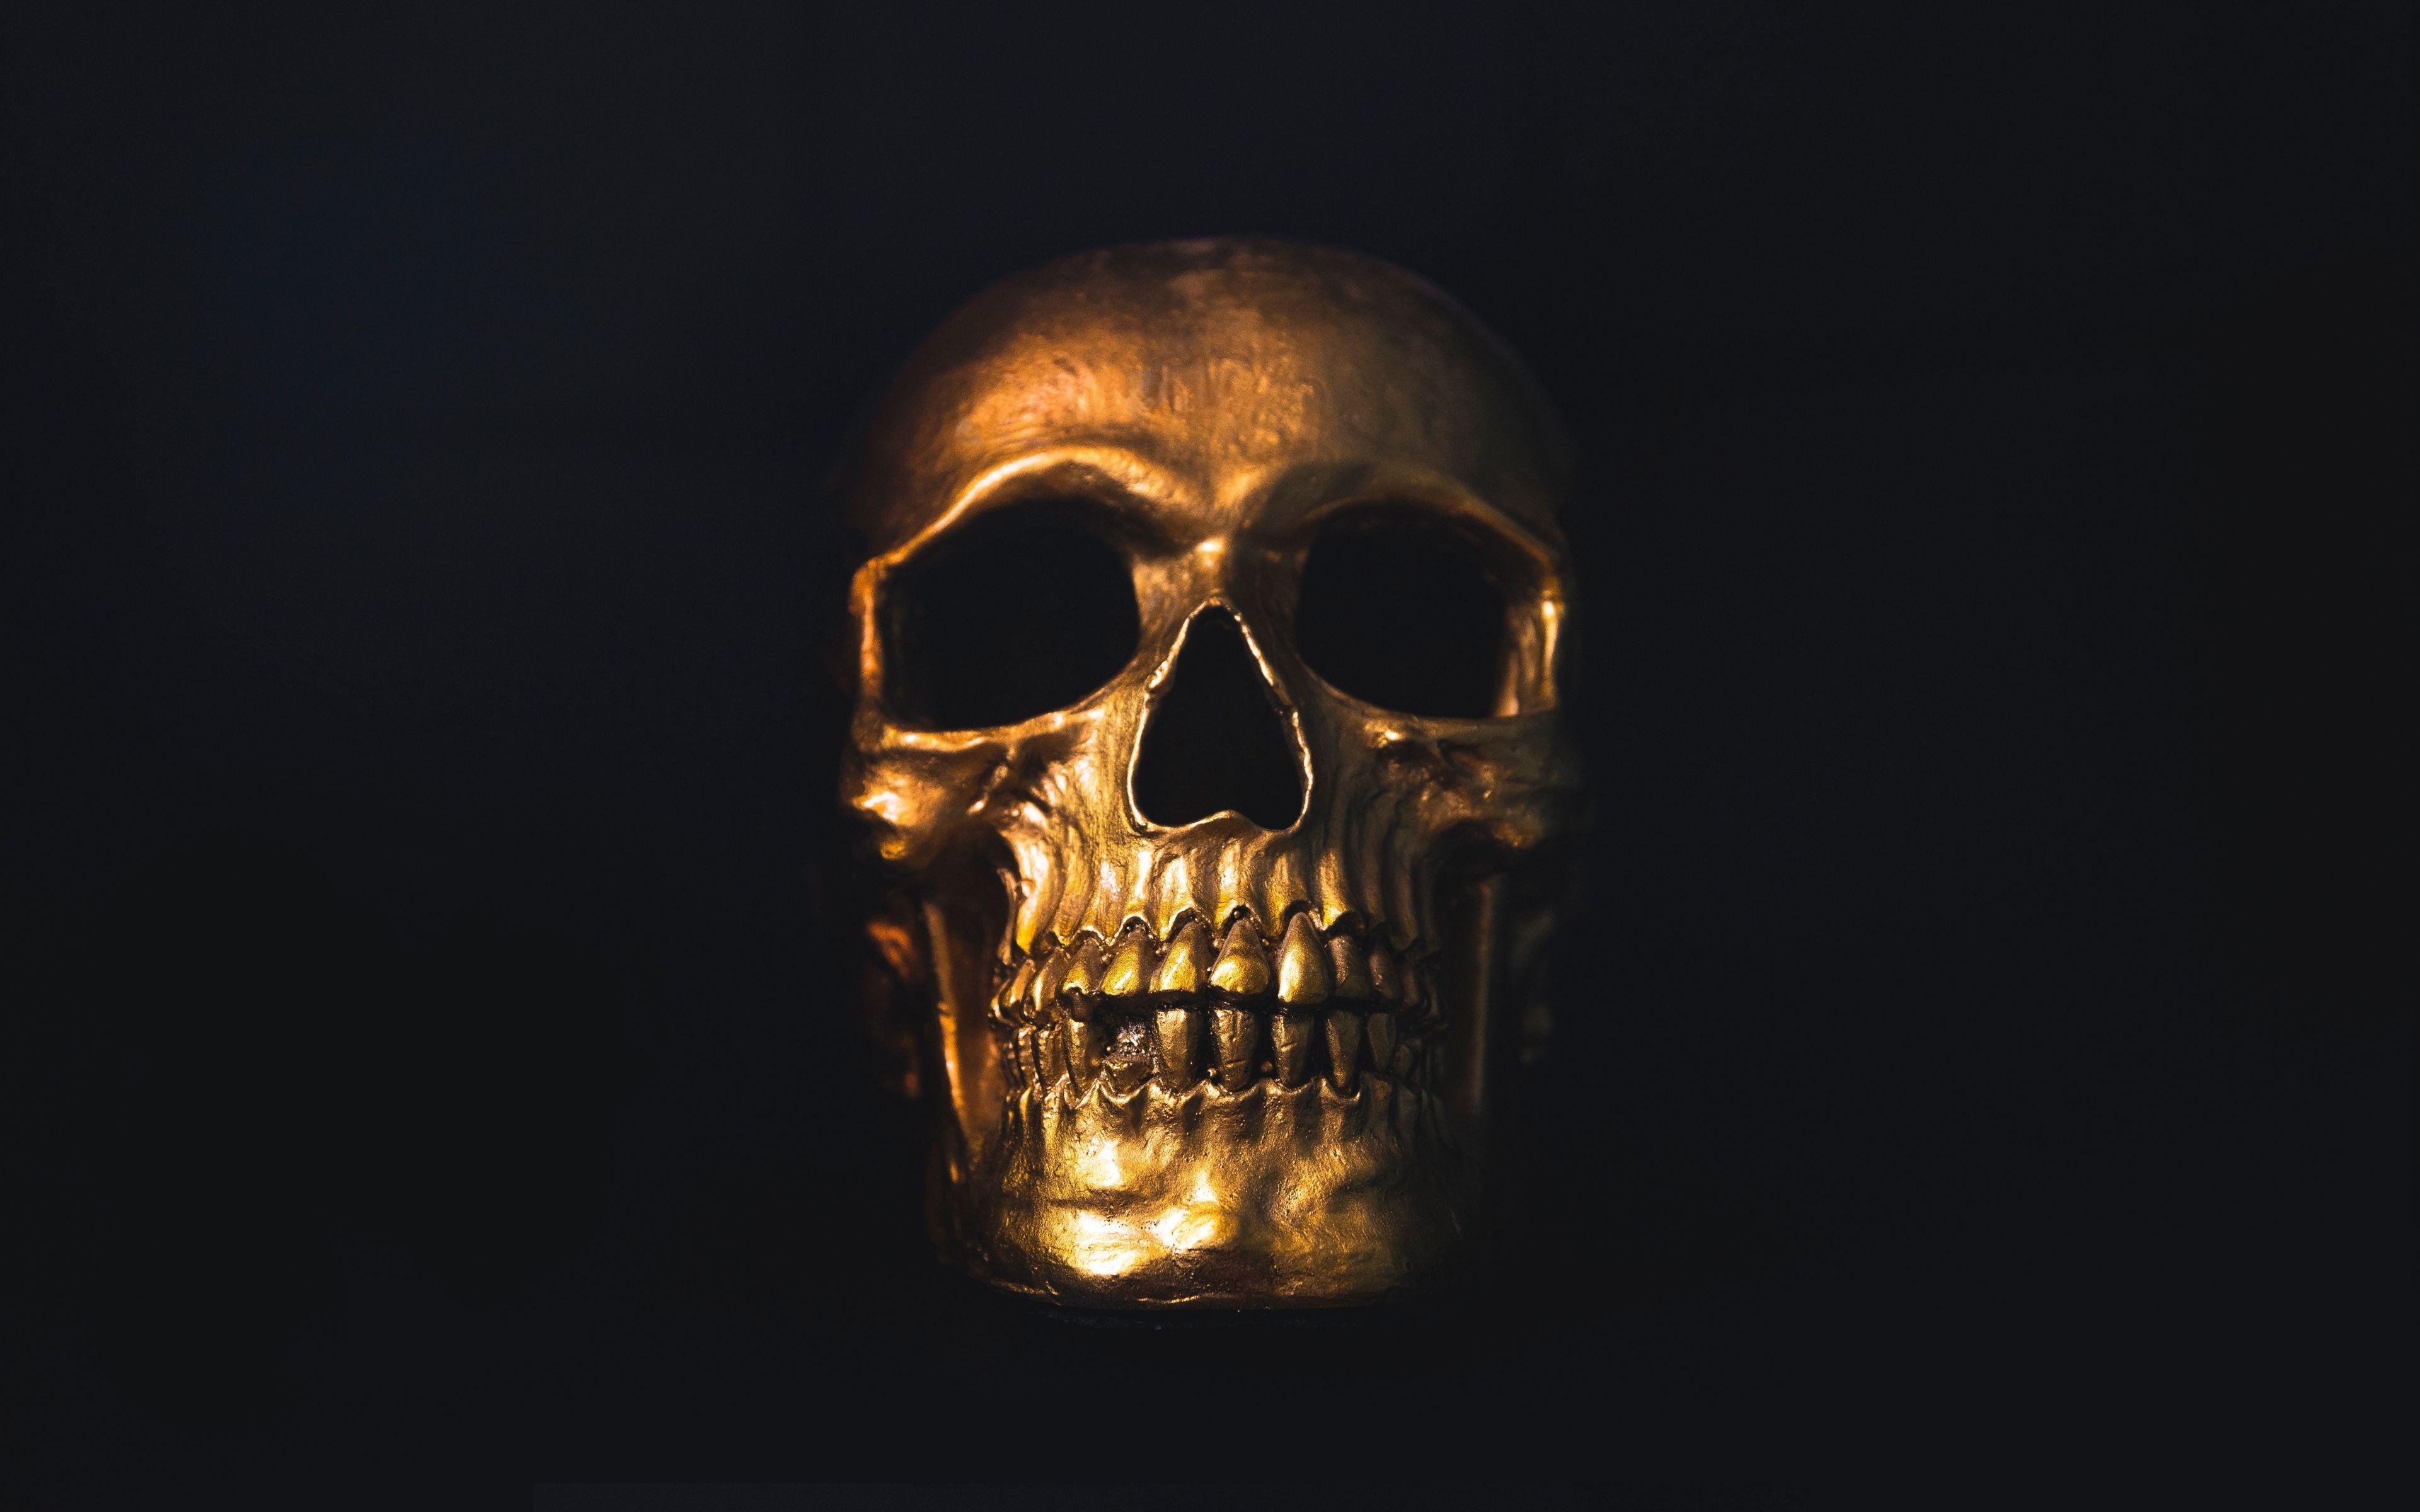 4K Ultra HD Skull Wallpaper Free 4K Ultra HD Skull Background